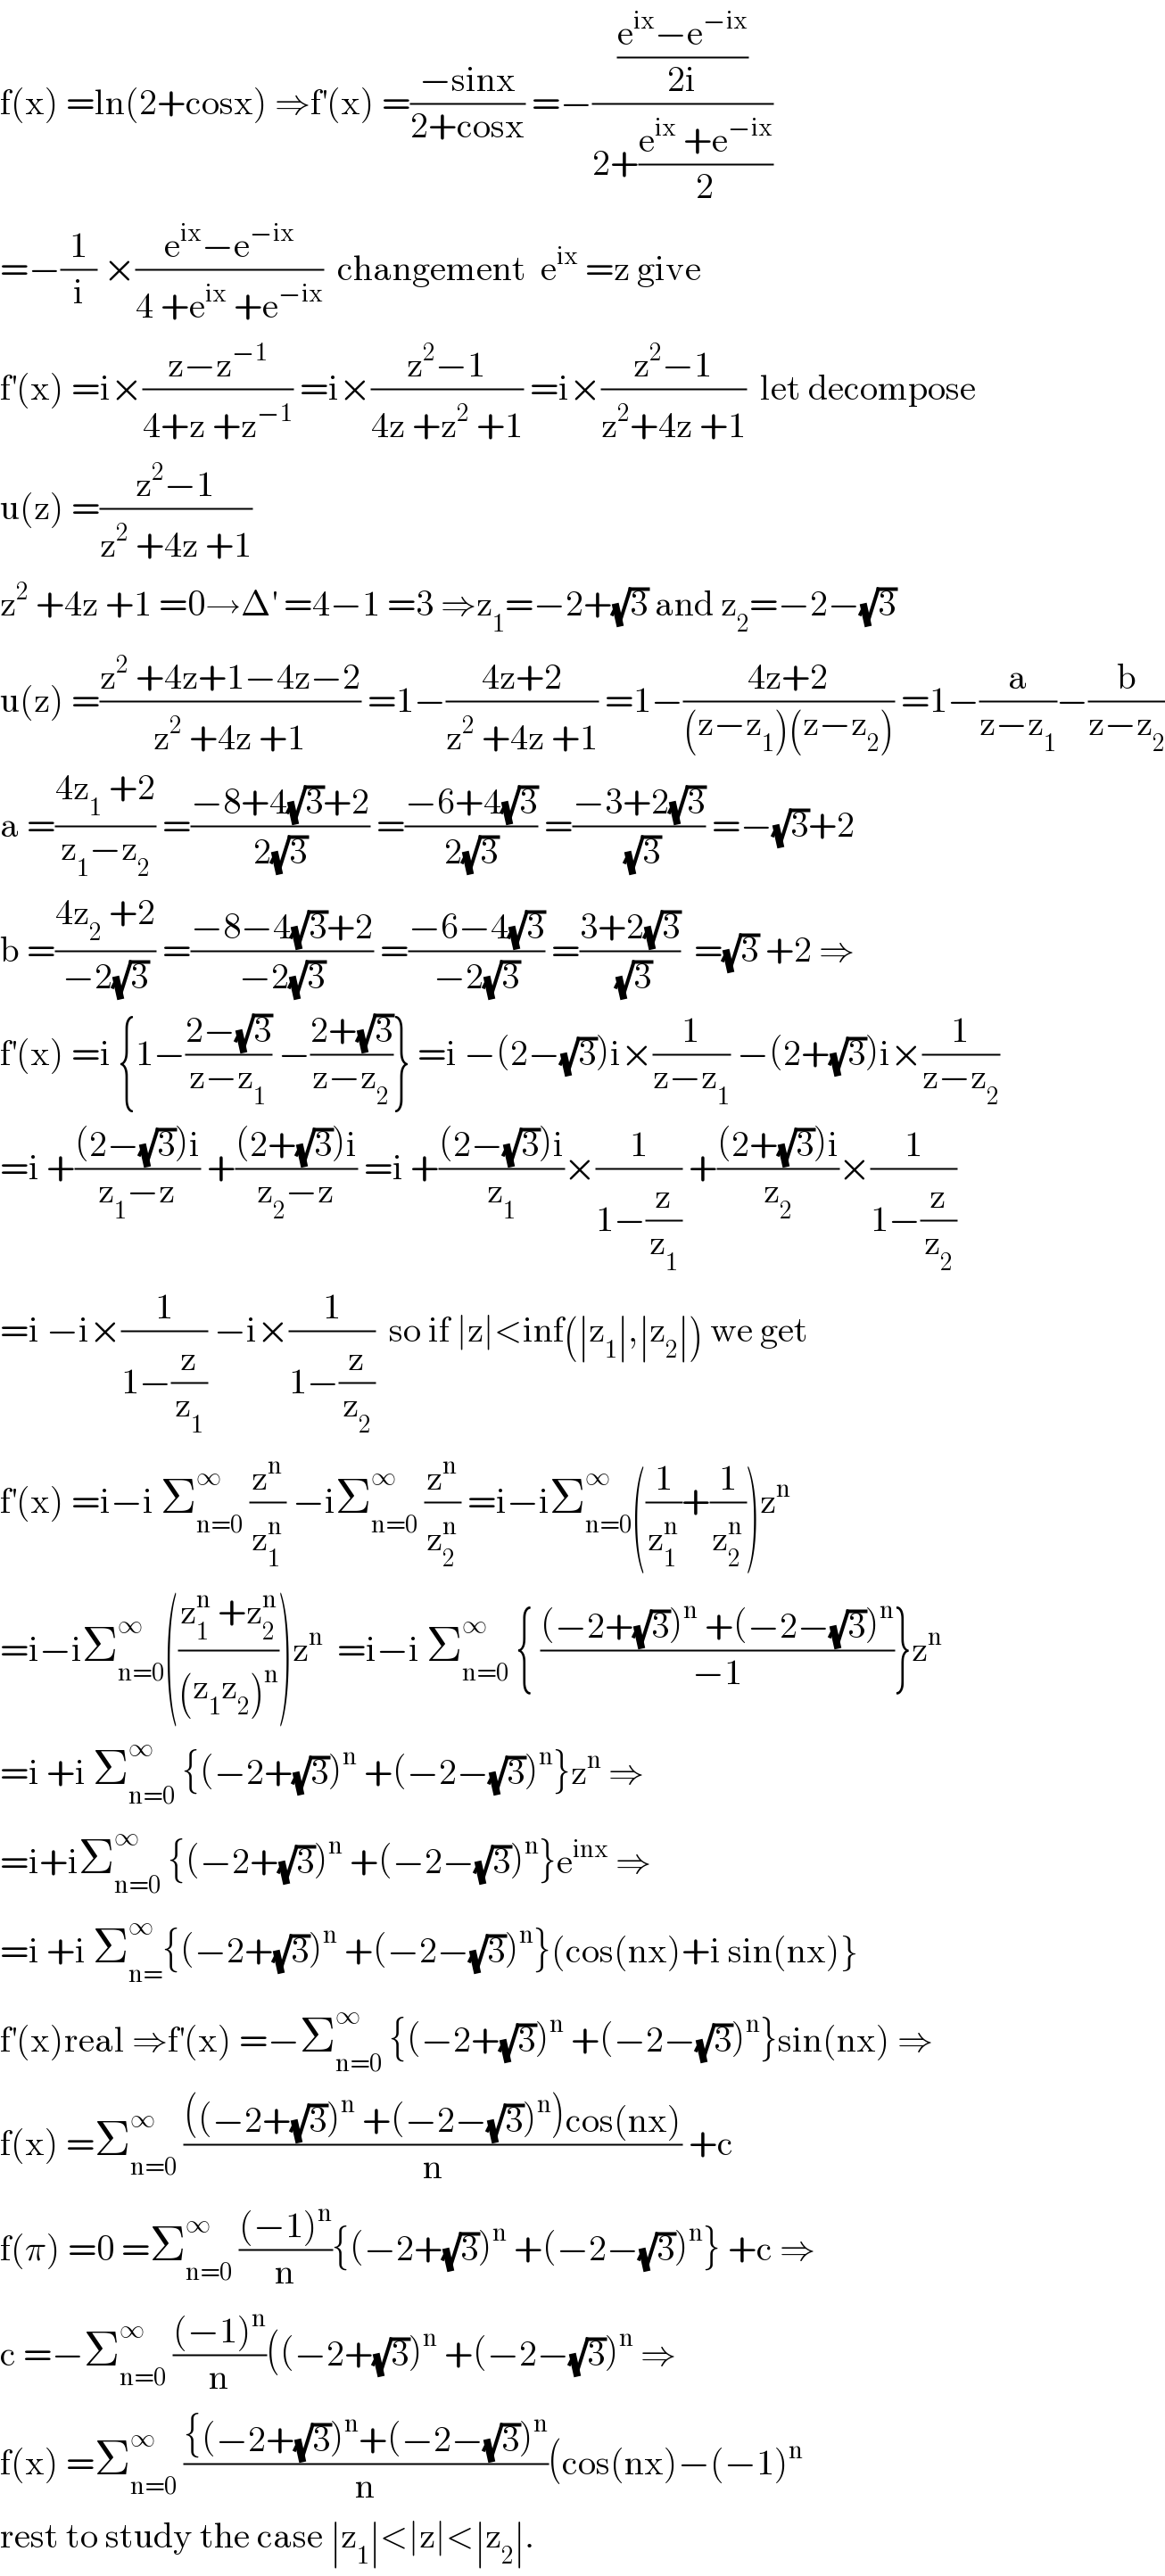 f(x) =ln(2+cosx) ⇒f^′ (x) =((−sinx)/(2+cosx)) =−(((e^(ix) −e^(−ix) )/(2i))/(2+((e^(ix)  +e^(−ix) )/2)))  =−(1/i) ×((e^(ix) −e^(−ix) )/(4 +e^(ix)  +e^(−ix) ))  changement  e^(ix)  =z give  f^′ (x) =i×((z−z^(−1) )/(4+z +z^(−1) )) =i×((z^2 −1)/(4z +z^2  +1)) =i×((z^2 −1)/(z^2 +4z +1))  let decompose  u(z) =((z^2 −1)/(z^2  +4z +1))  z^2  +4z +1 =0→Δ^′  =4−1 =3 ⇒z_1 =−2+(√3) and z_2 =−2−(√3)  u(z) =((z^2  +4z+1−4z−2)/(z^2  +4z +1)) =1−((4z+2)/(z^2  +4z +1)) =1−((4z+2)/((z−z_1 )(z−z_2 ))) =1−(a/(z−z_1 ))−(b/(z−z_2 ))  a =((4z_1  +2)/(z_1 −z_2 )) =((−8+4(√3)+2)/(2(√3))) =((−6+4(√3))/(2(√3))) =((−3+2(√3))/(√3)) =−(√3)+2  b =((4z_2  +2)/(−2(√3))) =((−8−4(√3)+2)/(−2(√3))) =((−6−4(√3))/(−2(√3))) =((3+2(√3))/(√3))  =(√3) +2 ⇒  f^′ (x) =i {1−((2−(√3))/(z−z_1 )) −((2+(√3))/(z−z_2 ))} =i −(2−(√3))i×(1/(z−z_1 )) −(2+(√3))i×(1/(z−z_2 ))  =i +(((2−(√3))i)/(z_1 −z)) +(((2+(√3))i)/(z_2 −z)) =i +(((2−(√3))i)/z_1 )×(1/(1−(z/z_1 ))) +(((2+(√3))i)/z_2 )×(1/(1−(z/z_2 )))  =i −i×(1/(1−(z/z_1 ))) −i×(1/(1−(z/z_2 )))  so if ∣z∣<inf(∣z_1 ∣,∣z_2 ∣) we get  f^′ (x) =i−i Σ_(n=0) ^∞  (z^n /z_1 ^n ) −iΣ_(n=0) ^∞  (z^n /z_2 ^n ) =i−iΣ_(n=0) ^∞ ((1/z_1 ^n )+(1/z_2 ^n ))z^n   =i−iΣ_(n=0) ^∞ (((z_1 ^n  +z_2 ^n )/((z_1 z_2 )^n )))z^n   =i−i Σ_(n=0) ^∞  { (((−2+(√3))^n  +(−2−(√3))^n )/(−1))}z^n   =i +i Σ_(n=0) ^∞  {(−2+(√3))^n  +(−2−(√3))^n }z^n  ⇒  =i+iΣ_(n=0) ^∞  {(−2+(√3))^n  +(−2−(√3))^n }e^(inx)  ⇒  =i +i Σ_(n=) ^∞ {(−2+(√3))^n  +(−2−(√3))^n }(cos(nx)+i sin(nx)}  f^′ (x)real ⇒f^′ (x) =−Σ_(n=0) ^∞  {(−2+(√3))^n  +(−2−(√3))^n }sin(nx) ⇒  f(x) =Σ_(n=0) ^∞  ((((−2+(√3))^n  +(−2−(√3))^n )cos(nx))/n) +c  f(π) =0 =Σ_(n=0) ^∞  (((−1)^n )/n){(−2+(√3))^n  +(−2−(√3))^n } +c ⇒  c =−Σ_(n=0) ^∞  (((−1)^n )/n)((−2+(√3))^n  +(−2−(√3))^n  ⇒  f(x) =Σ_(n=0) ^∞  (({(−2+(√3))^n +(−2−(√3))^n )/n)(cos(nx)−(−1)^n   rest to study the case ∣z_1 ∣<∣z∣<∣z_2 ∣.  